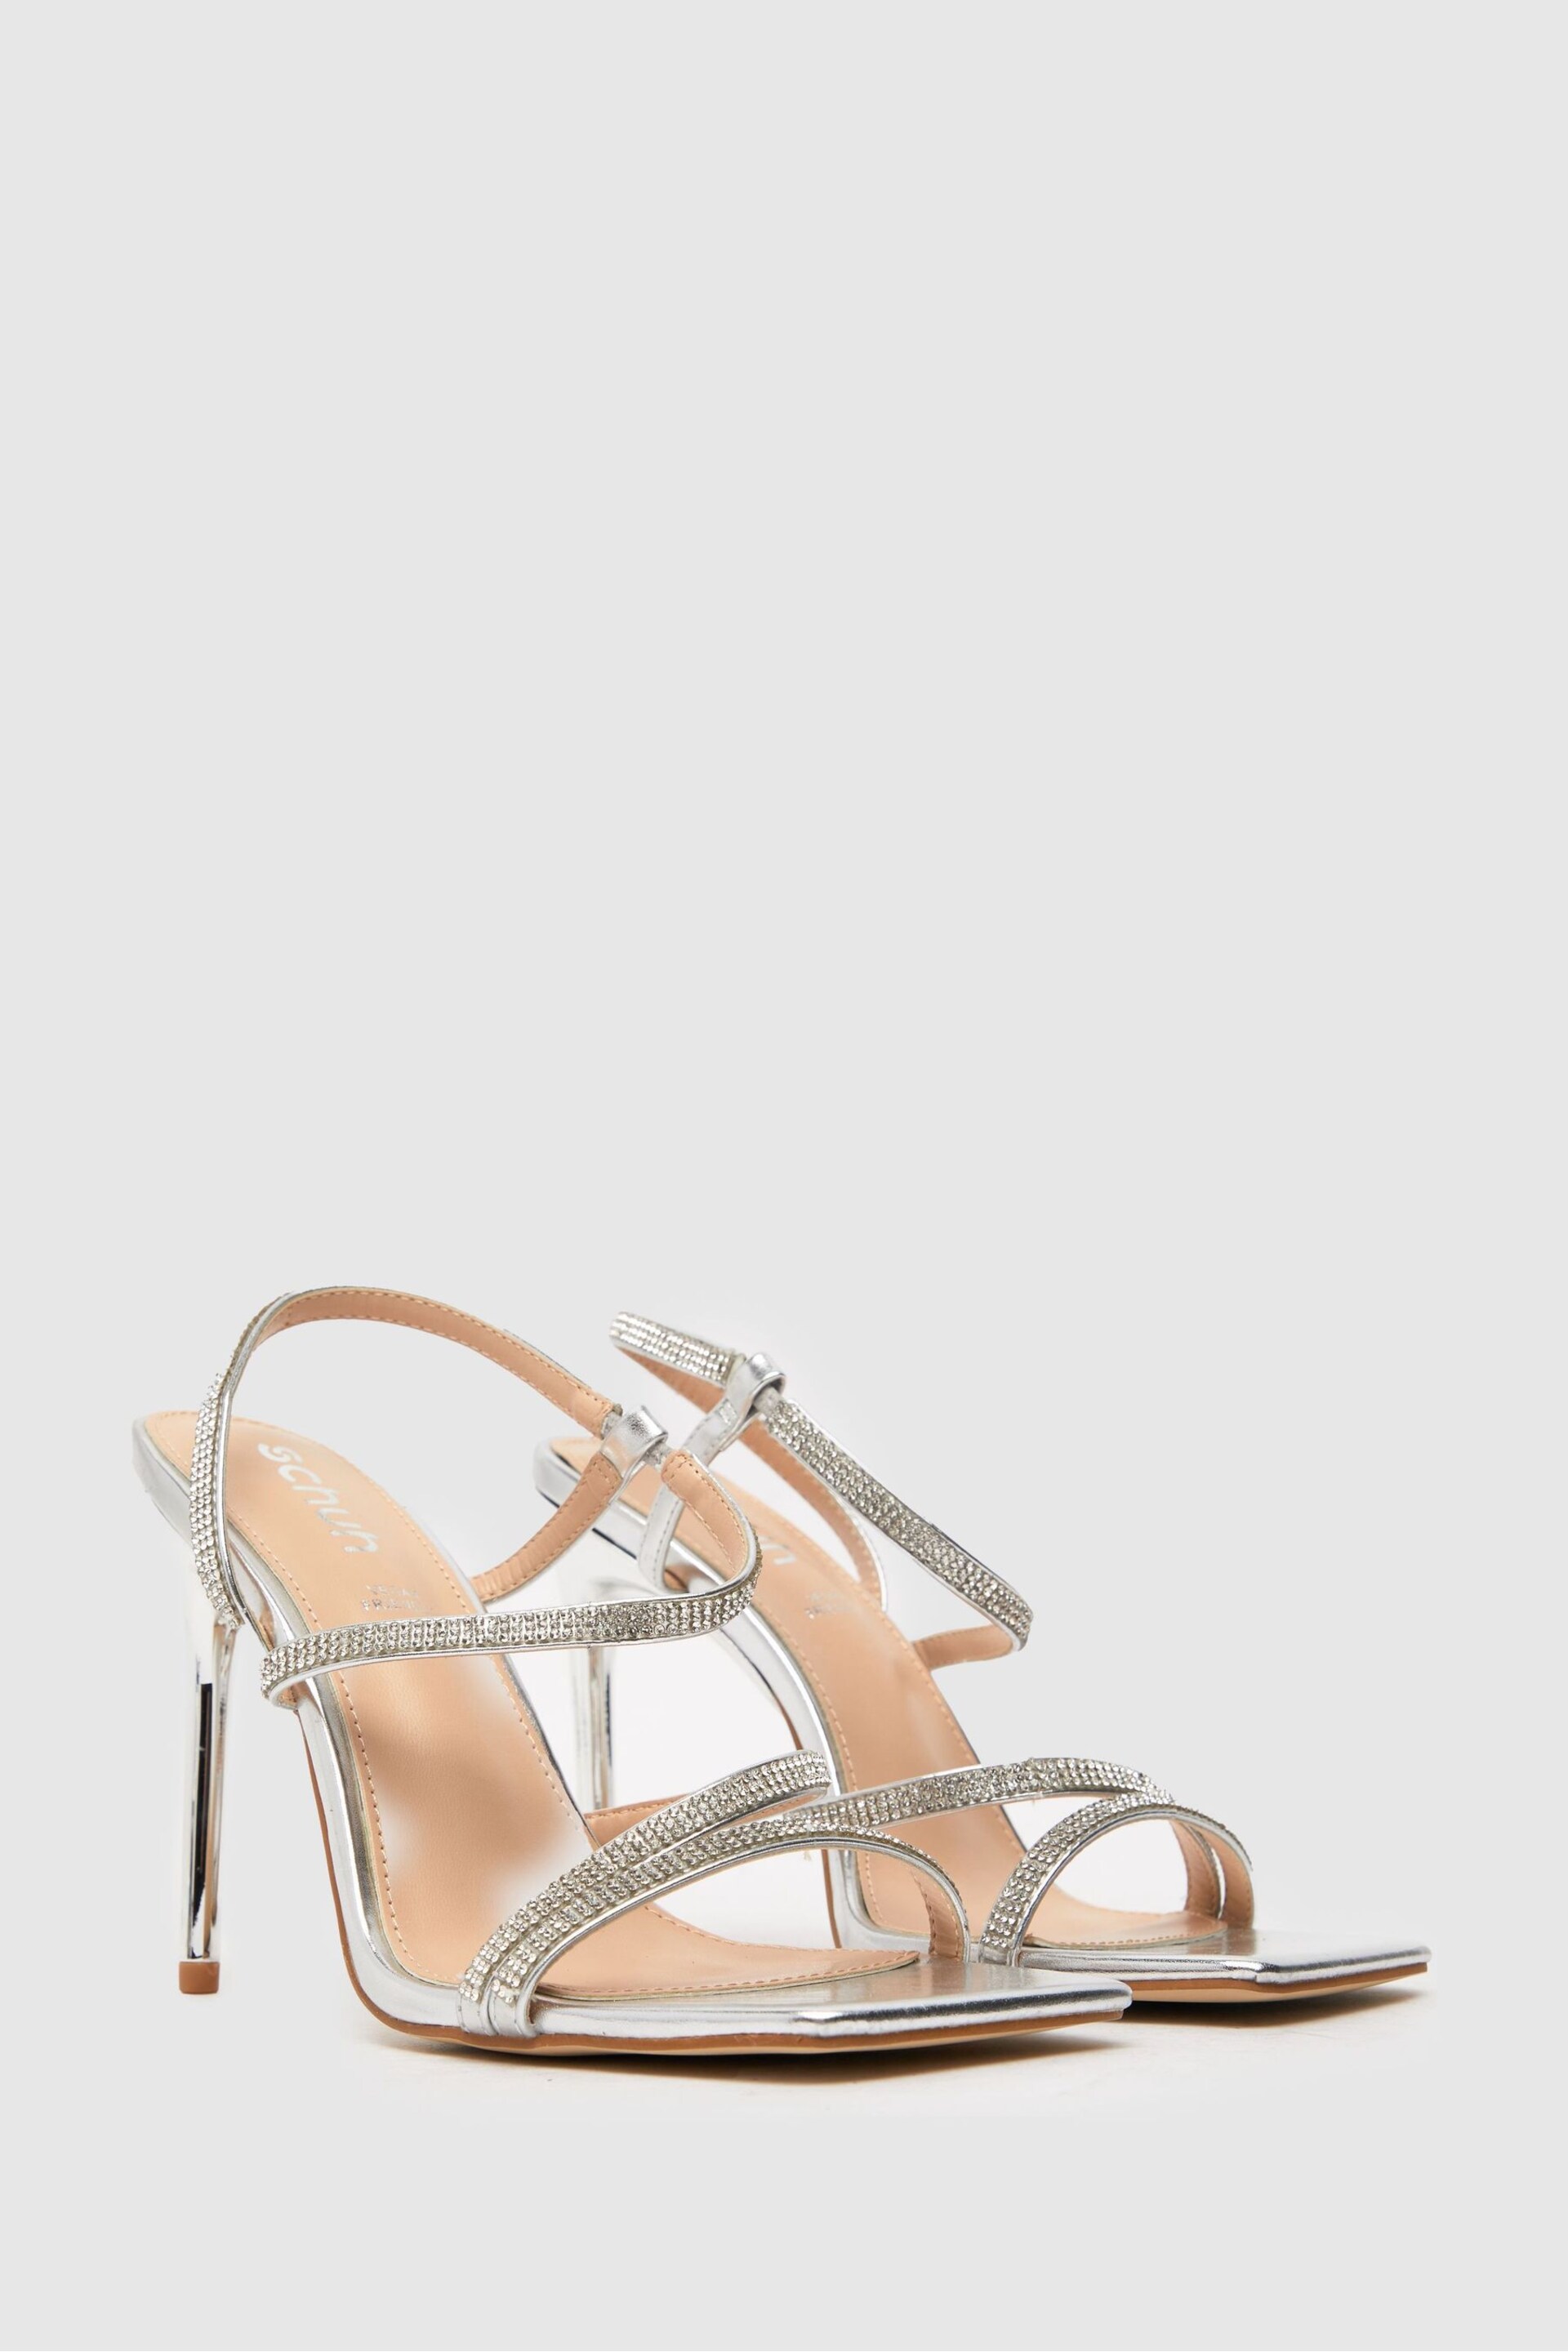 Schuh Shauna Embellished Sandals - Image 2 of 4